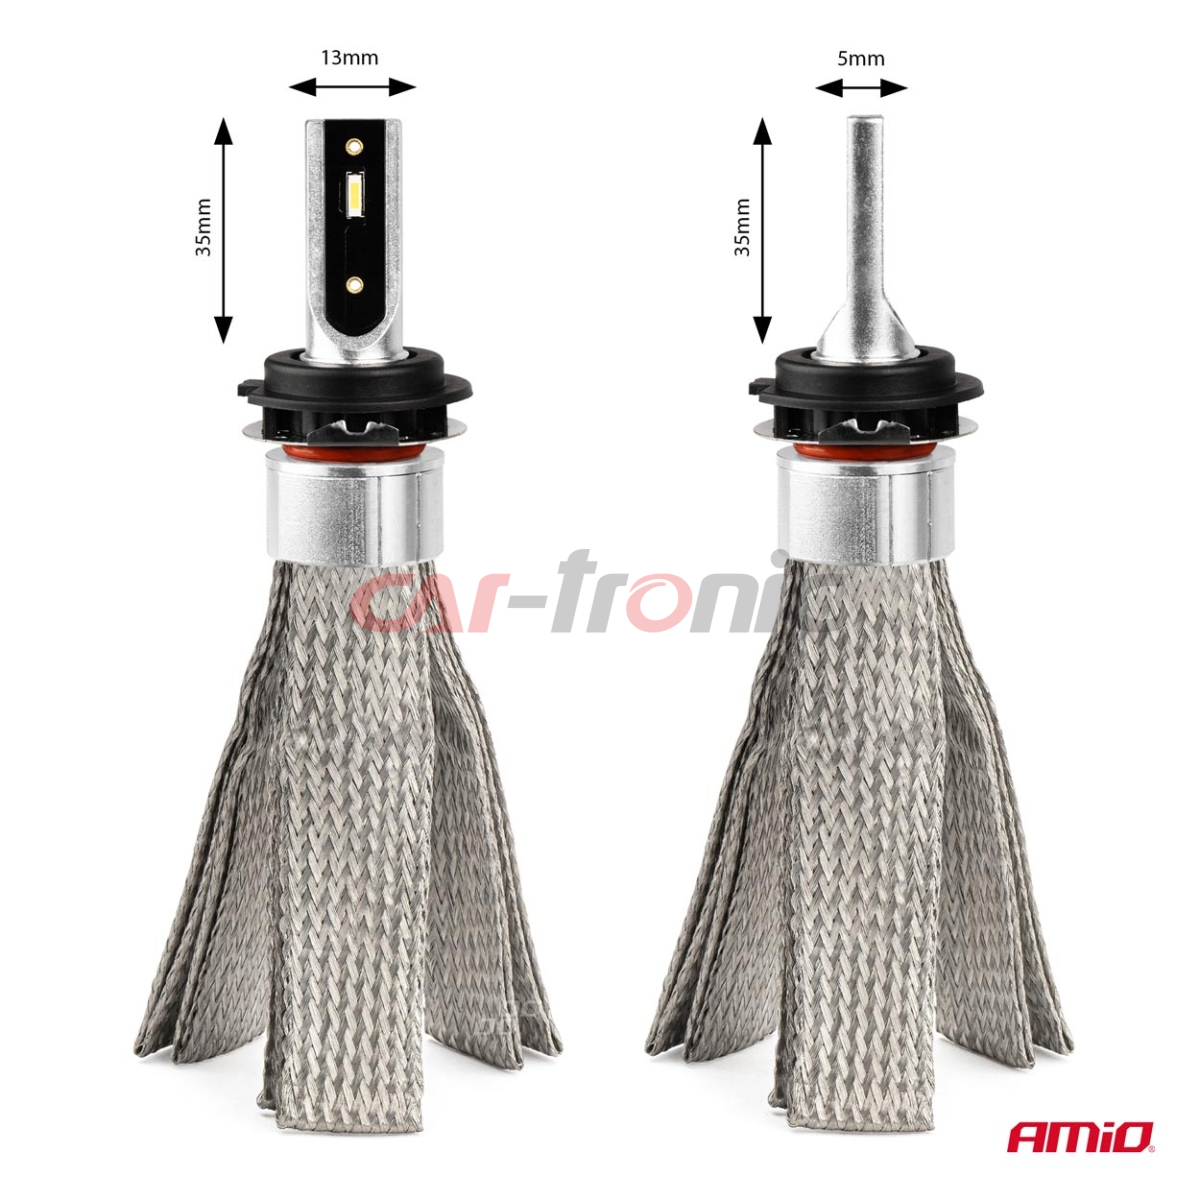 Żarówki samochodowe LED seria FLEX+ H7-6 12V 24V 6000K Canbus AMIO-03662